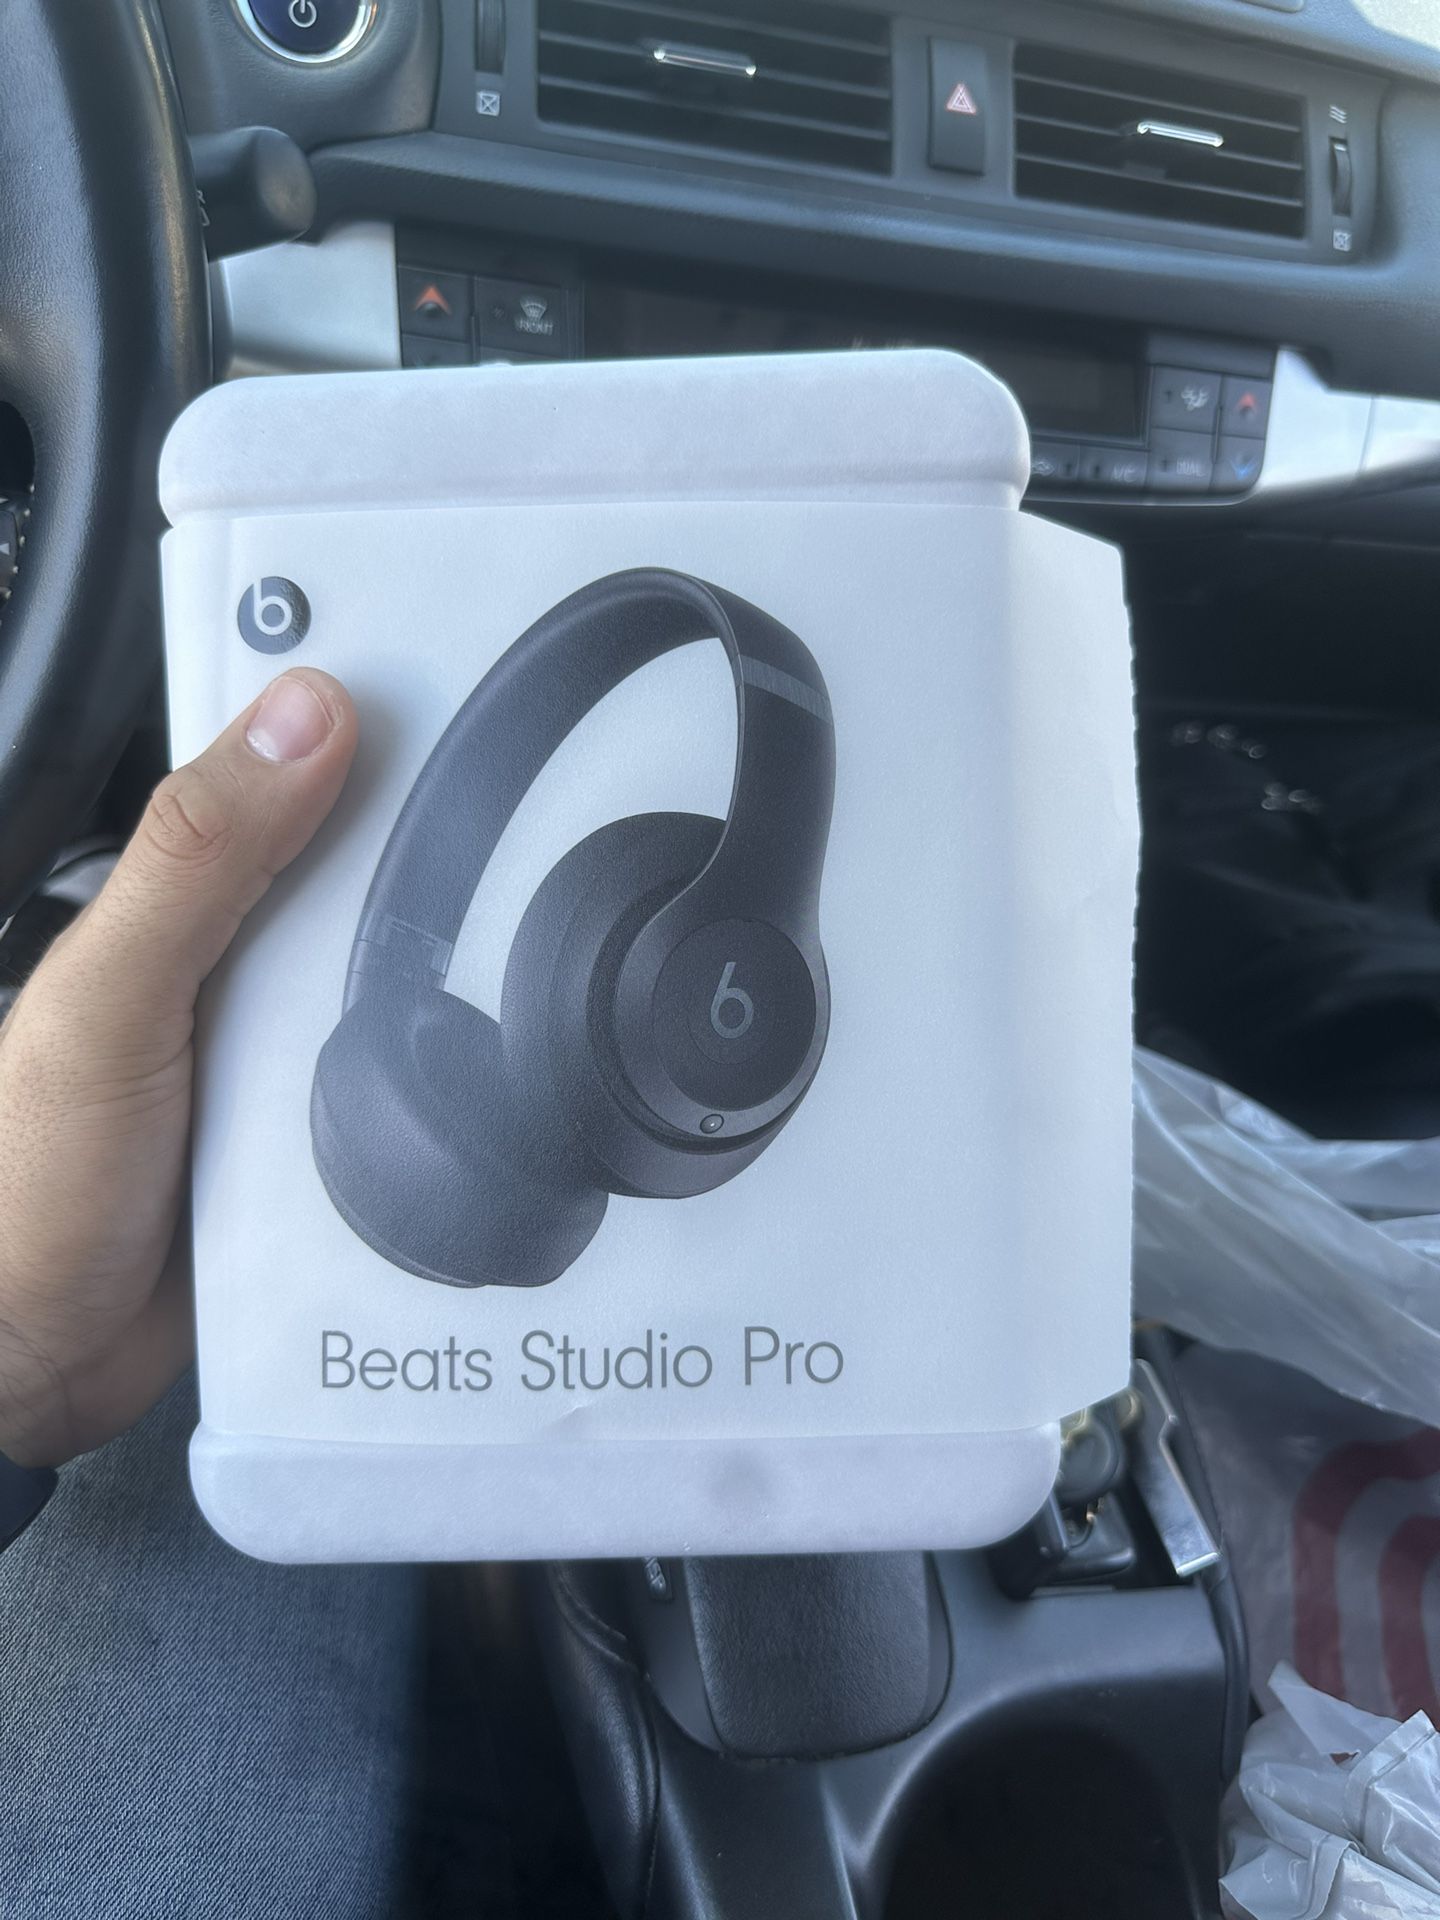 Beats Studio Pro’s